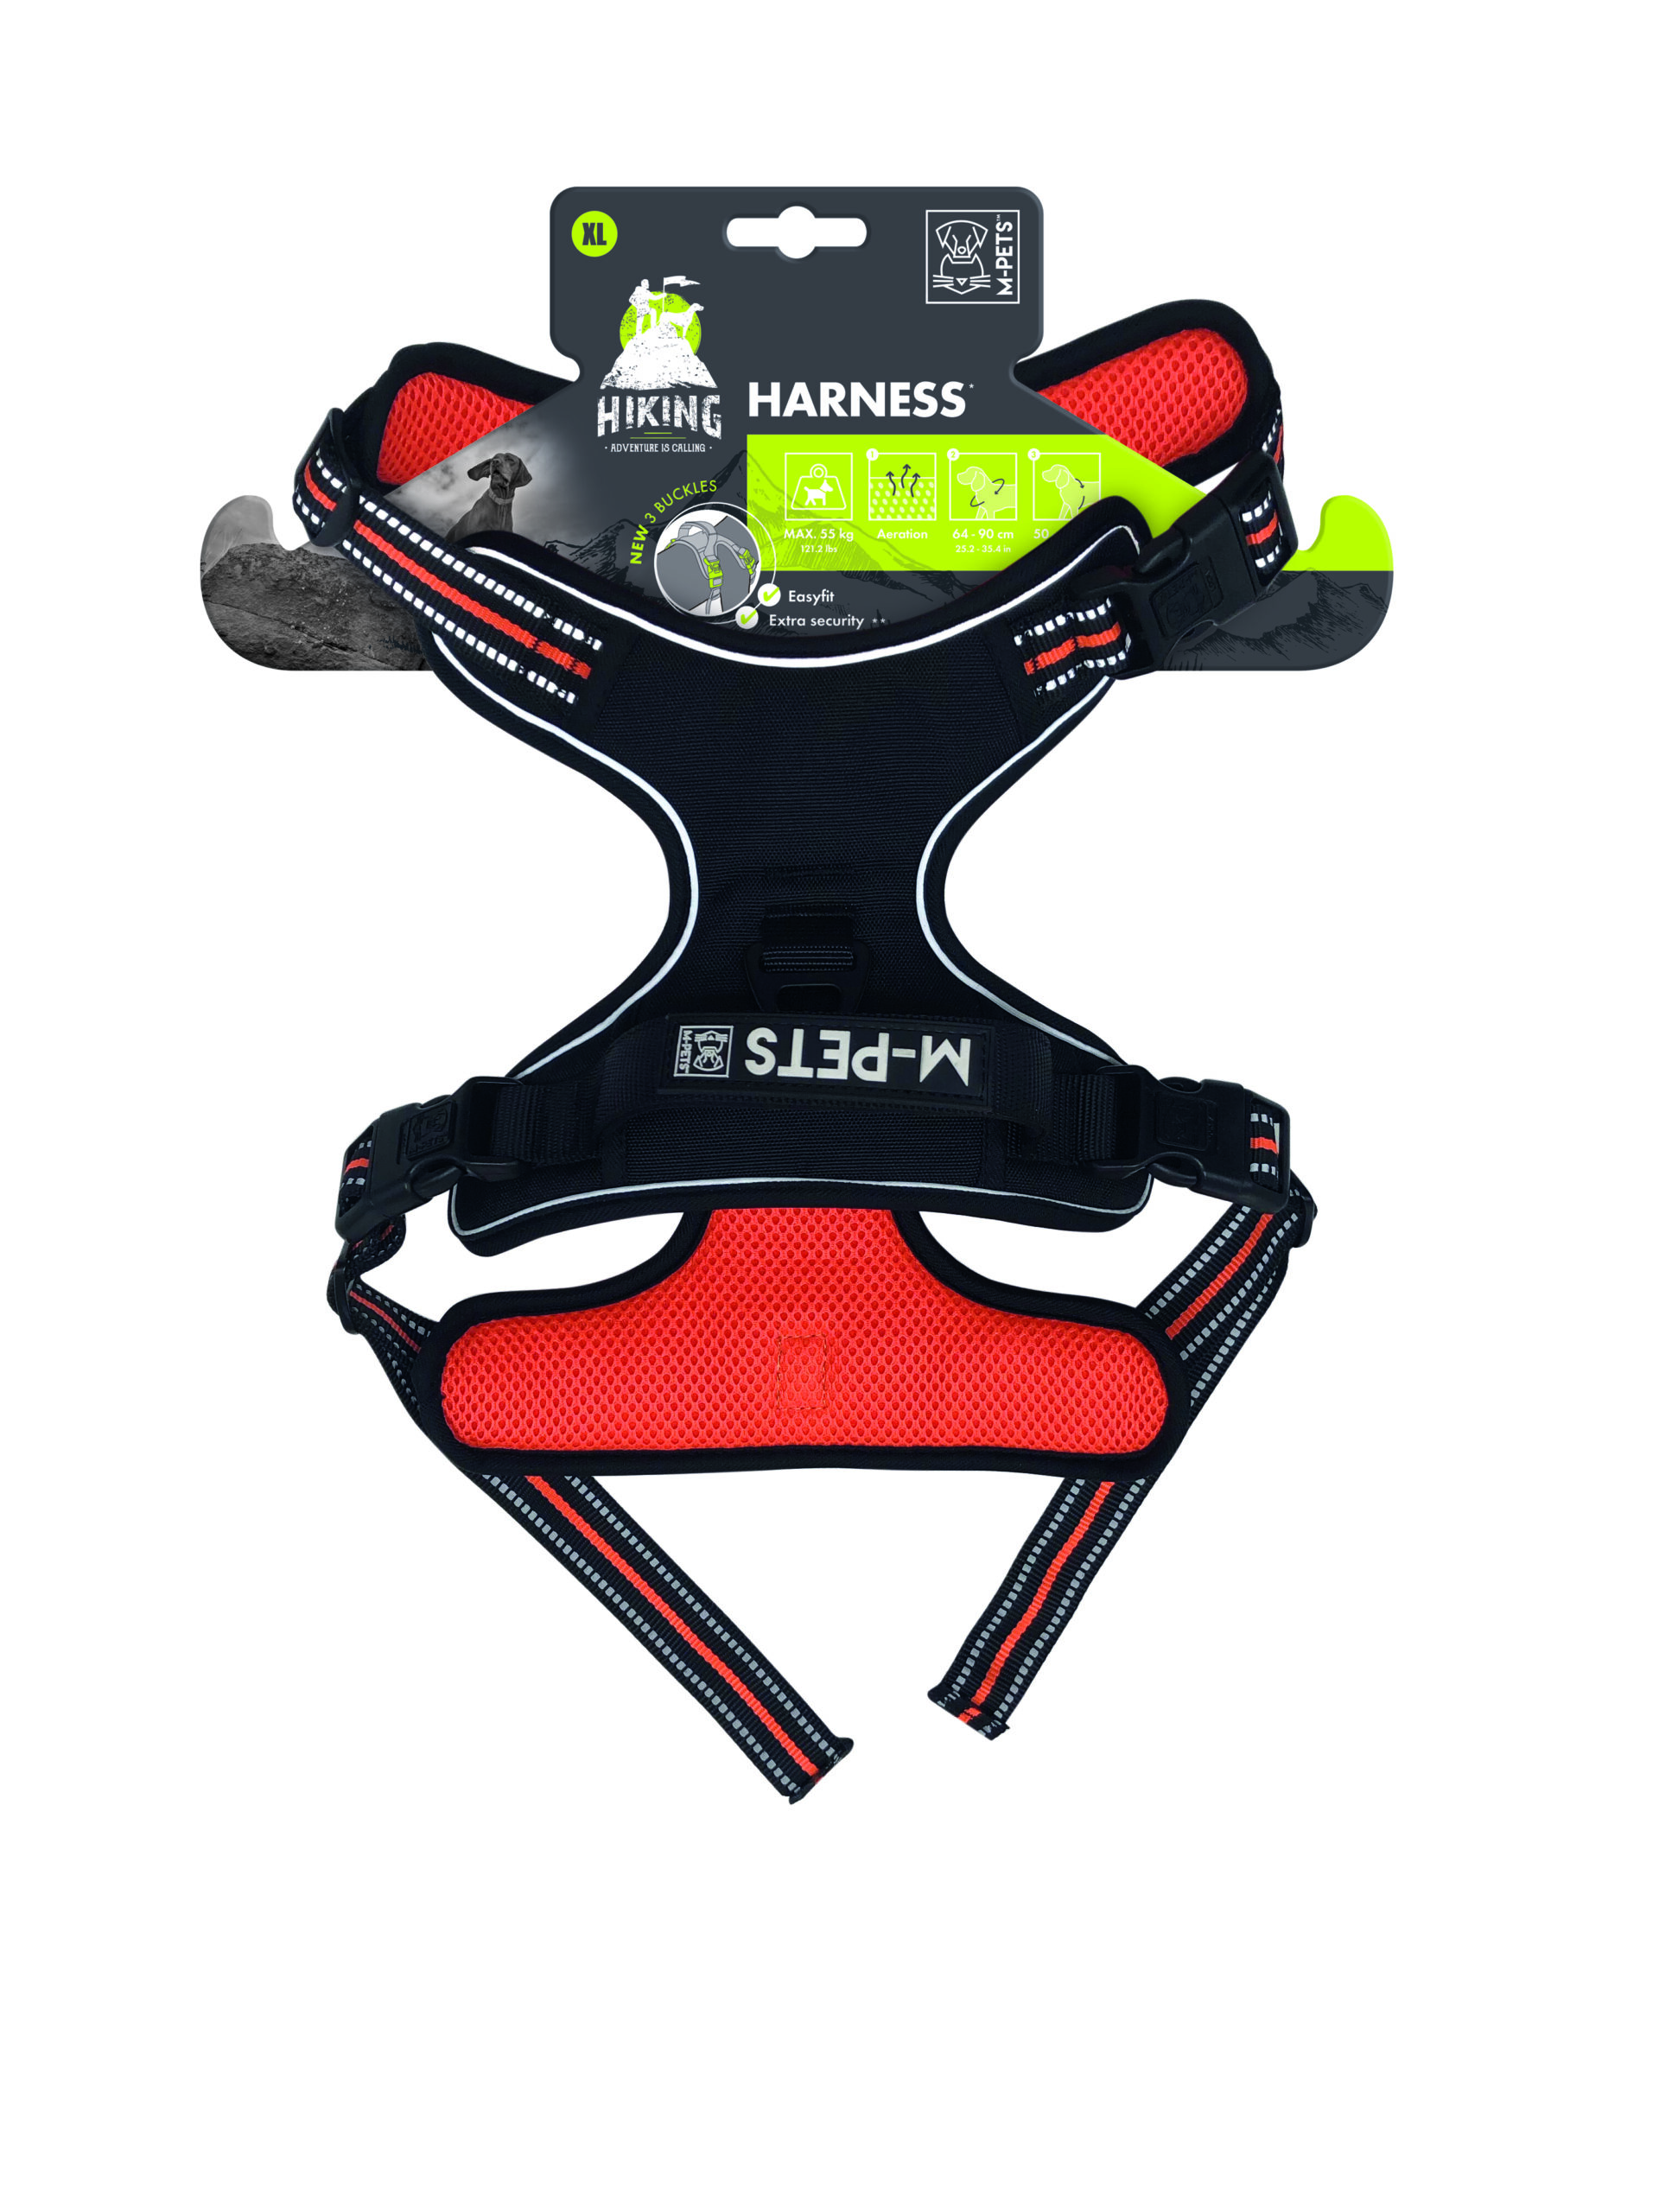 M-PETS_10822999_HIKING Harness XL_3D sim